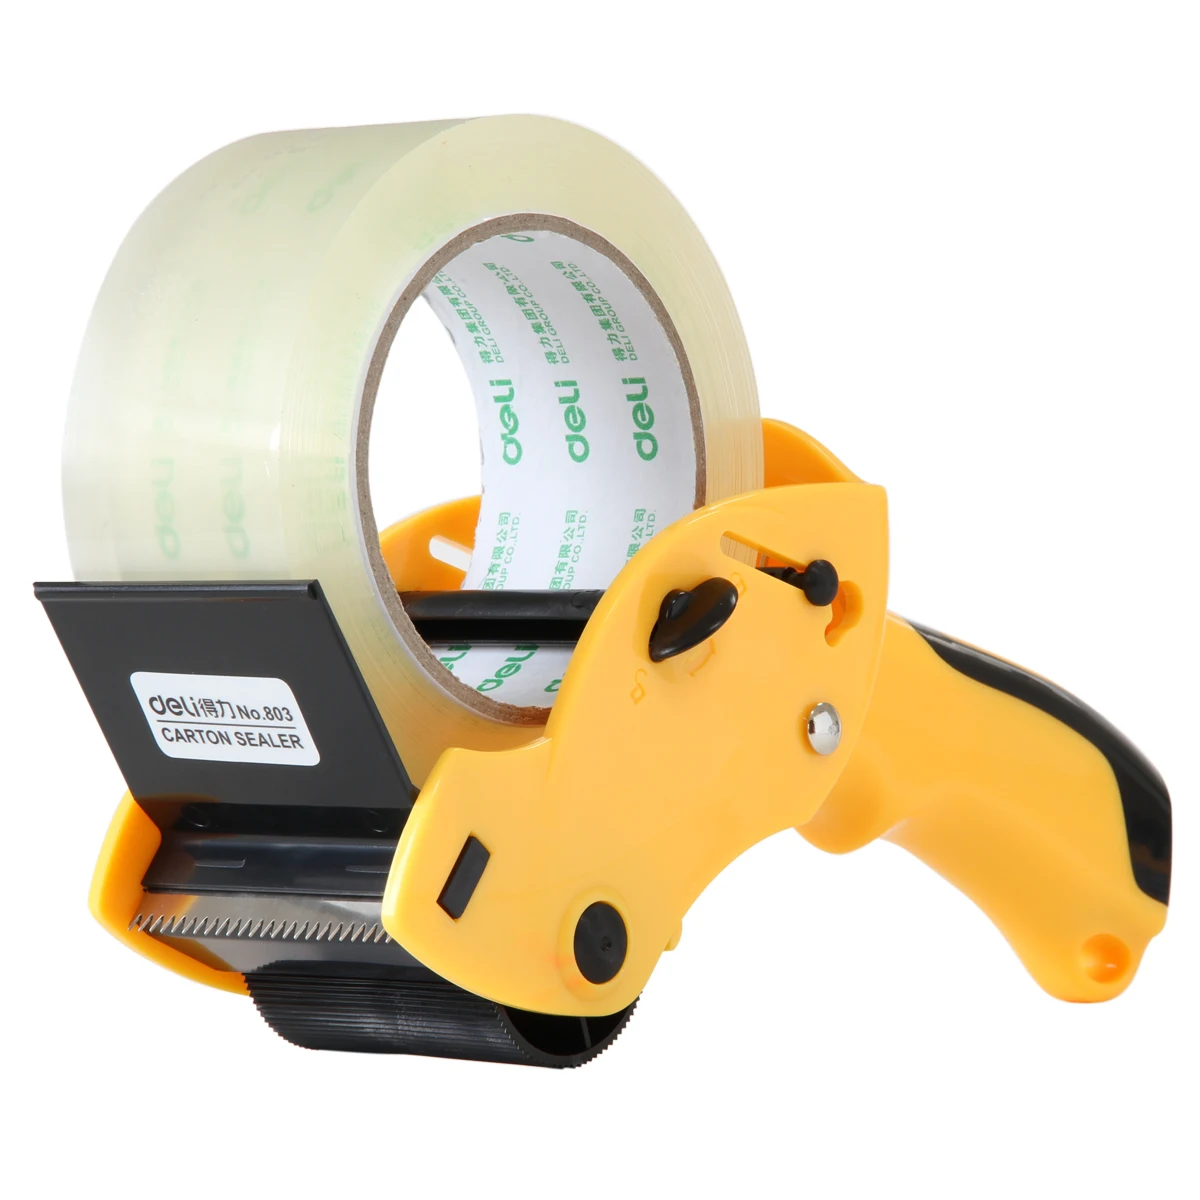 

Adhesiva Packer Dispenser Packing Tapes Holder Tape Dispensador Dispensers Tape Office Packing Sealing For Seat Strap